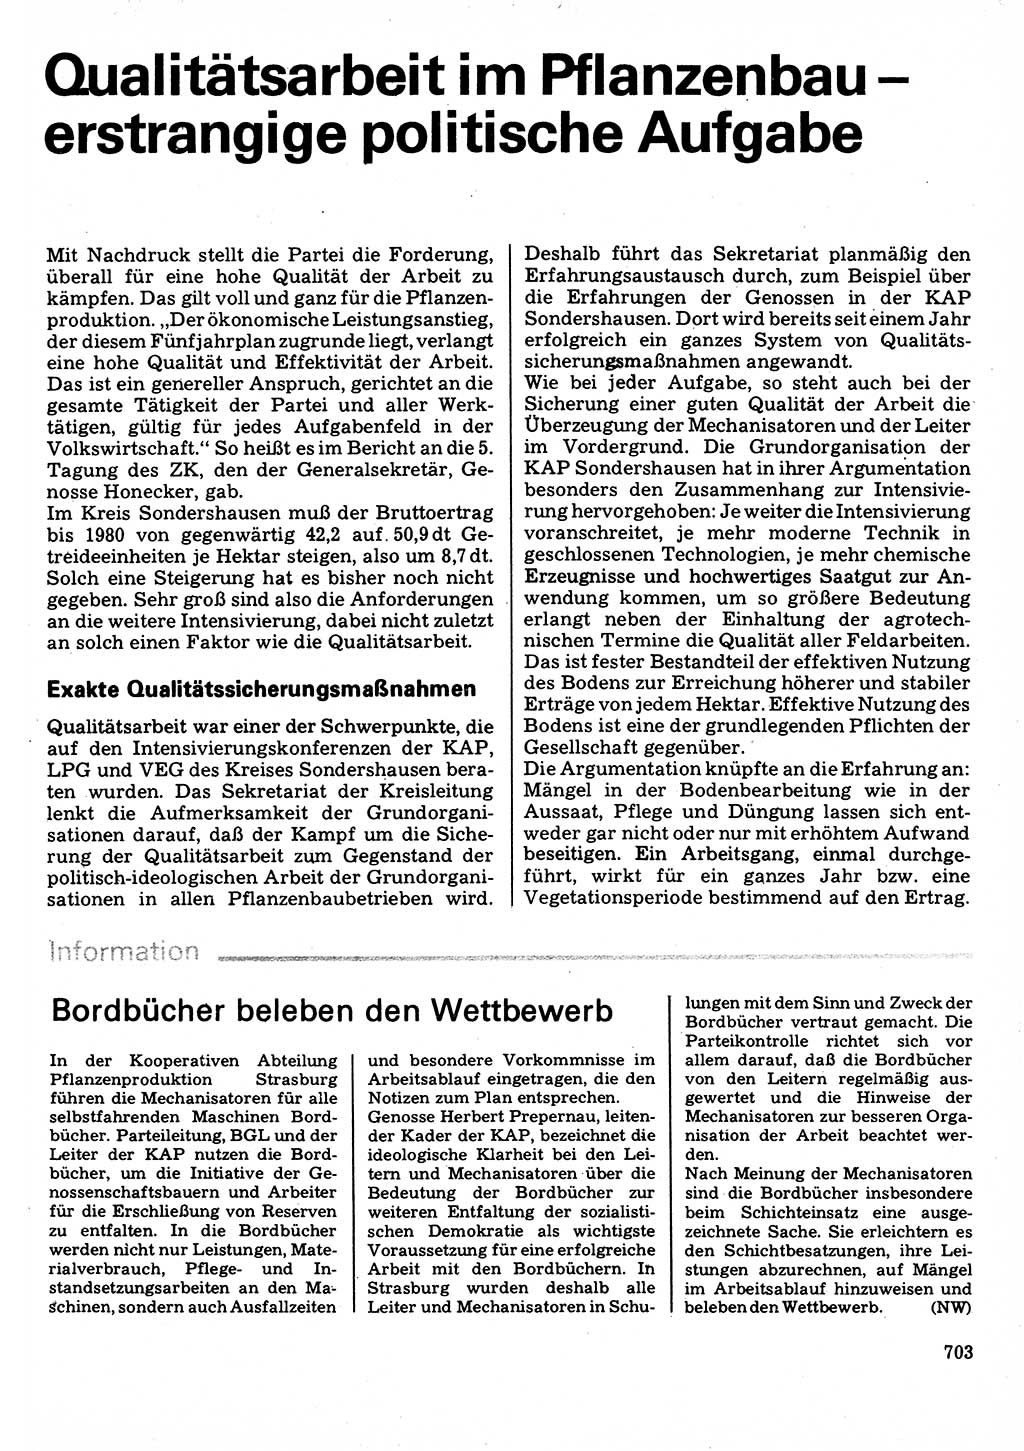 Neuer Weg (NW), Organ des Zentralkomitees (ZK) der SED (Sozialistische Einheitspartei Deutschlands) für Fragen des Parteilebens, 32. Jahrgang [Deutsche Demokratische Republik (DDR)] 1977, Seite 703 (NW ZK SED DDR 1977, S. 703)